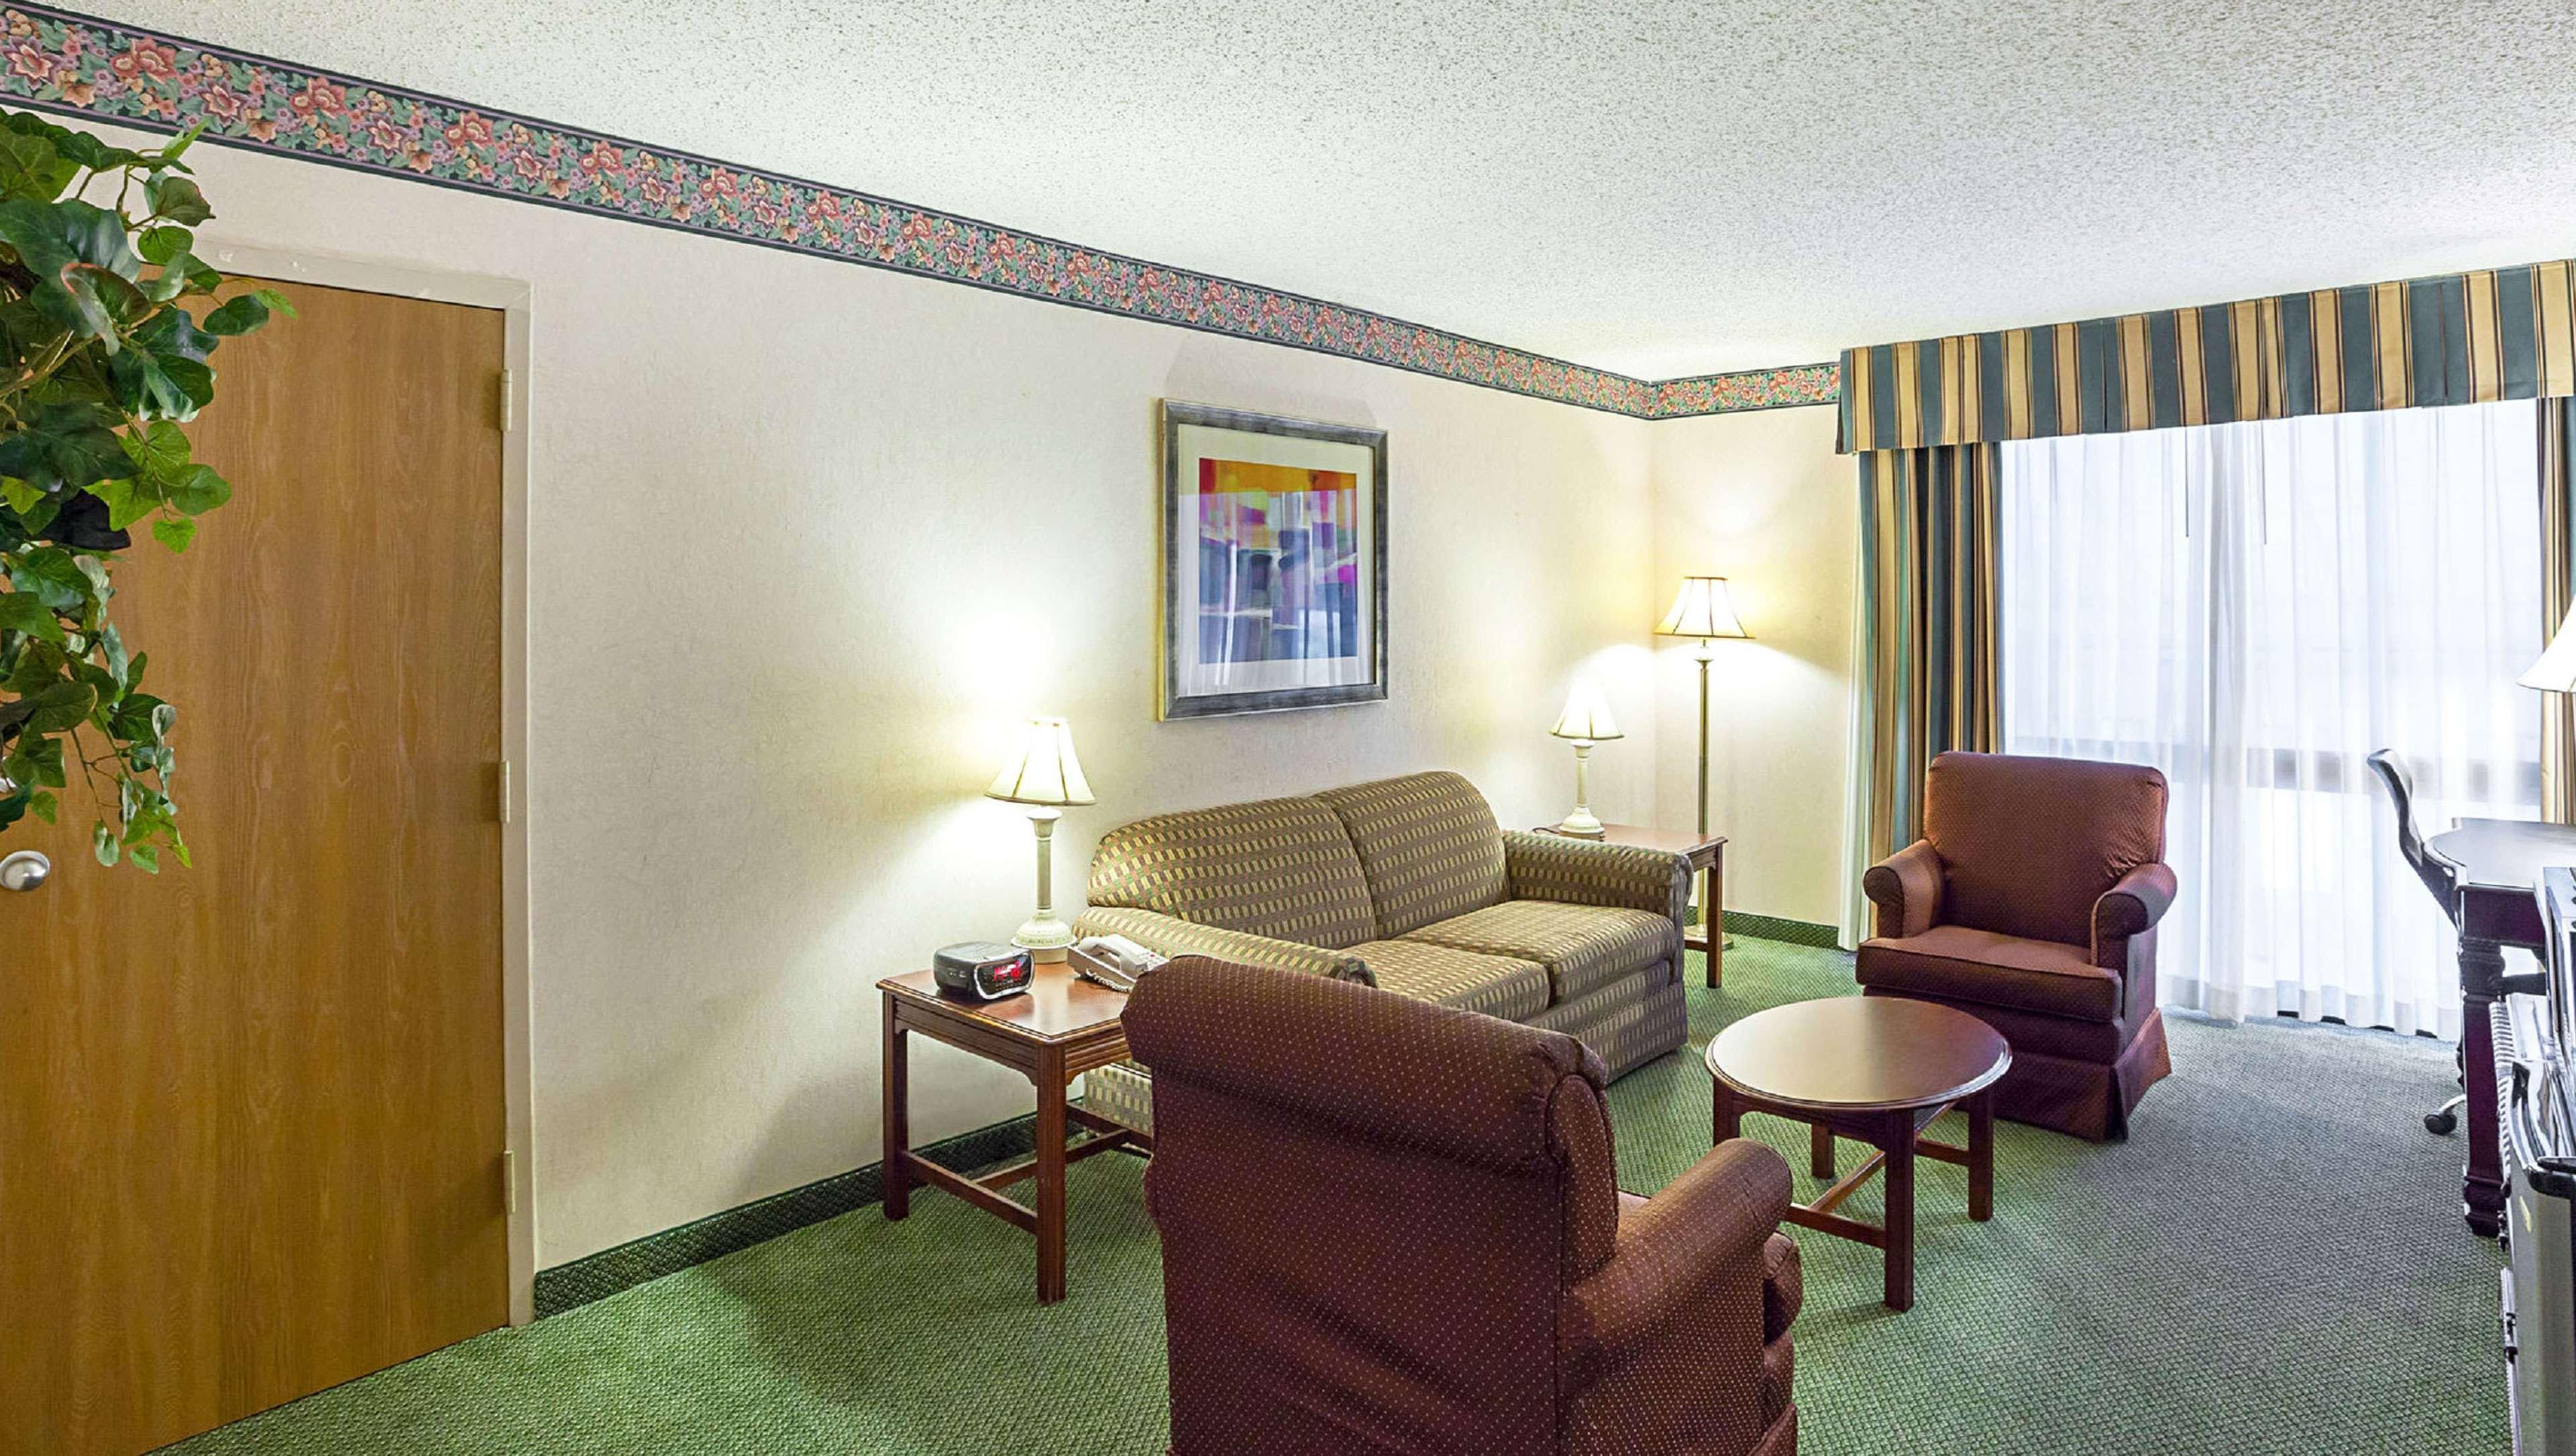 מלון Magnuson Grand דסוטו מראה חיצוני תמונה